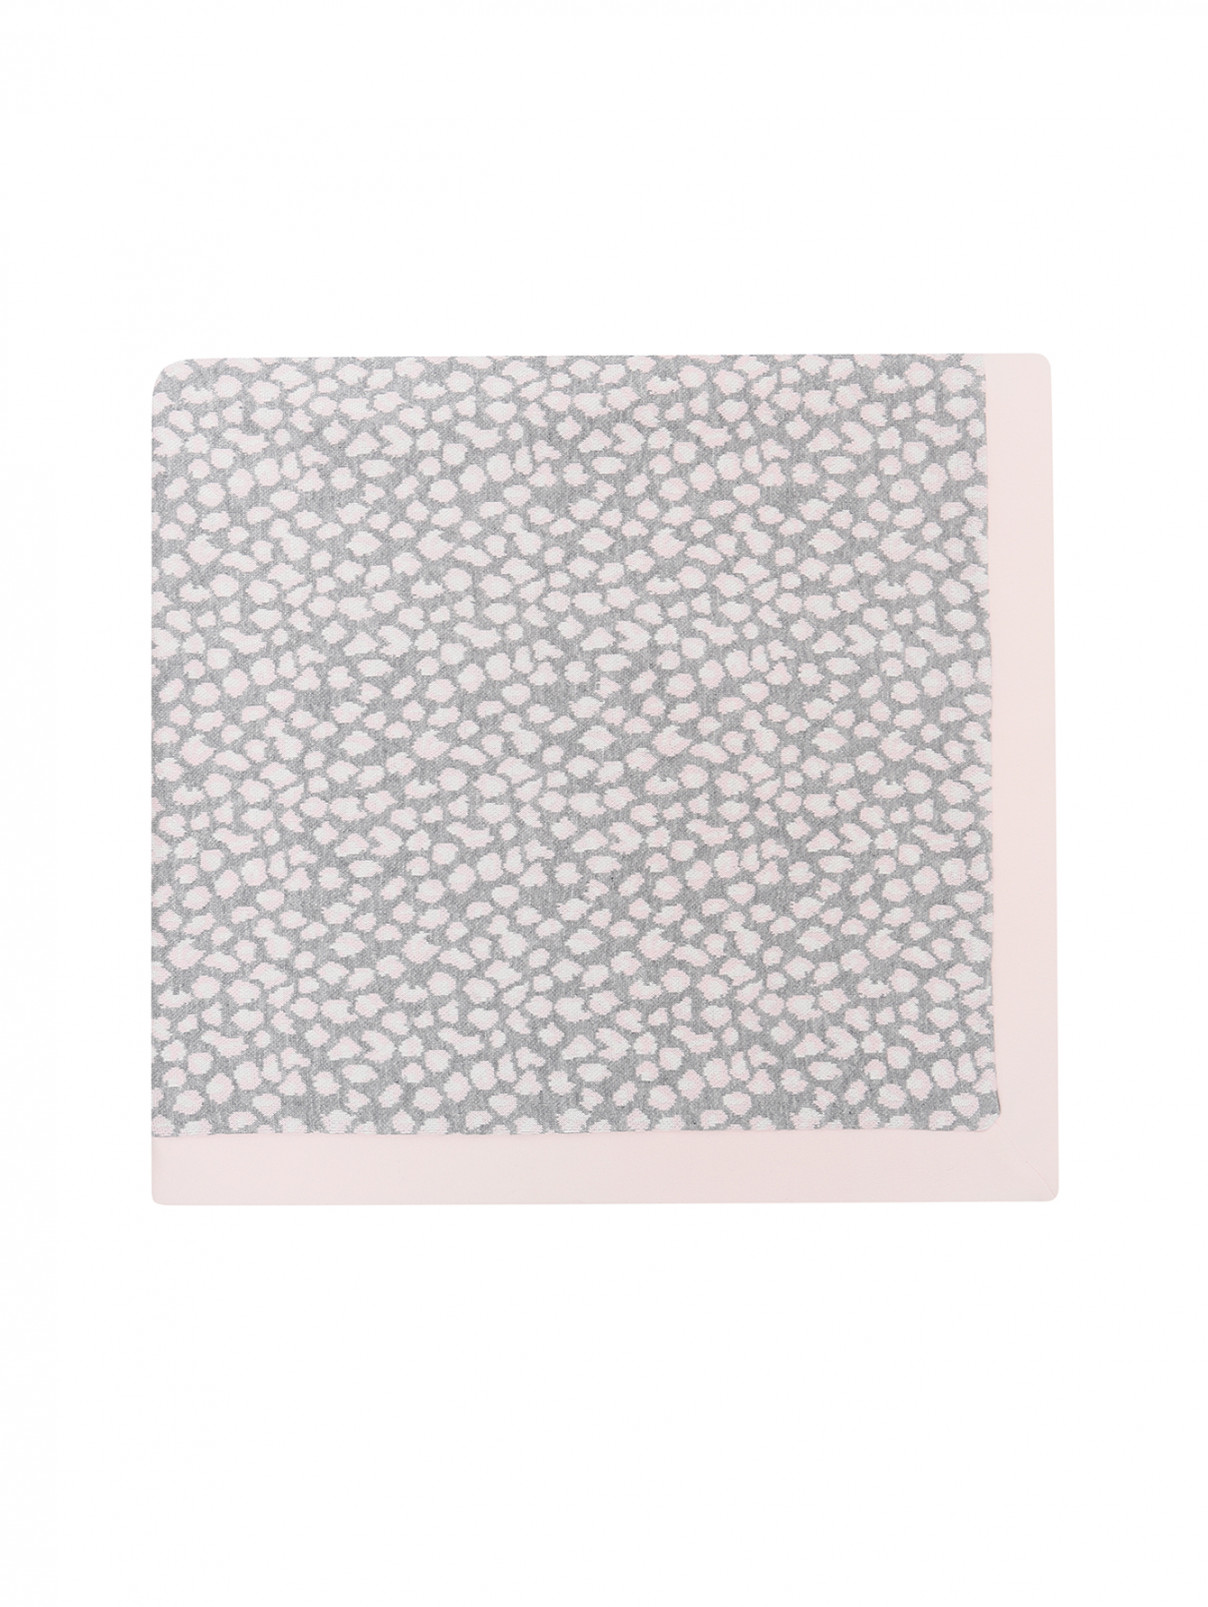 Одеяло с анималистичным узором Aletta  –  Обтравка1  – Цвет:  Серый